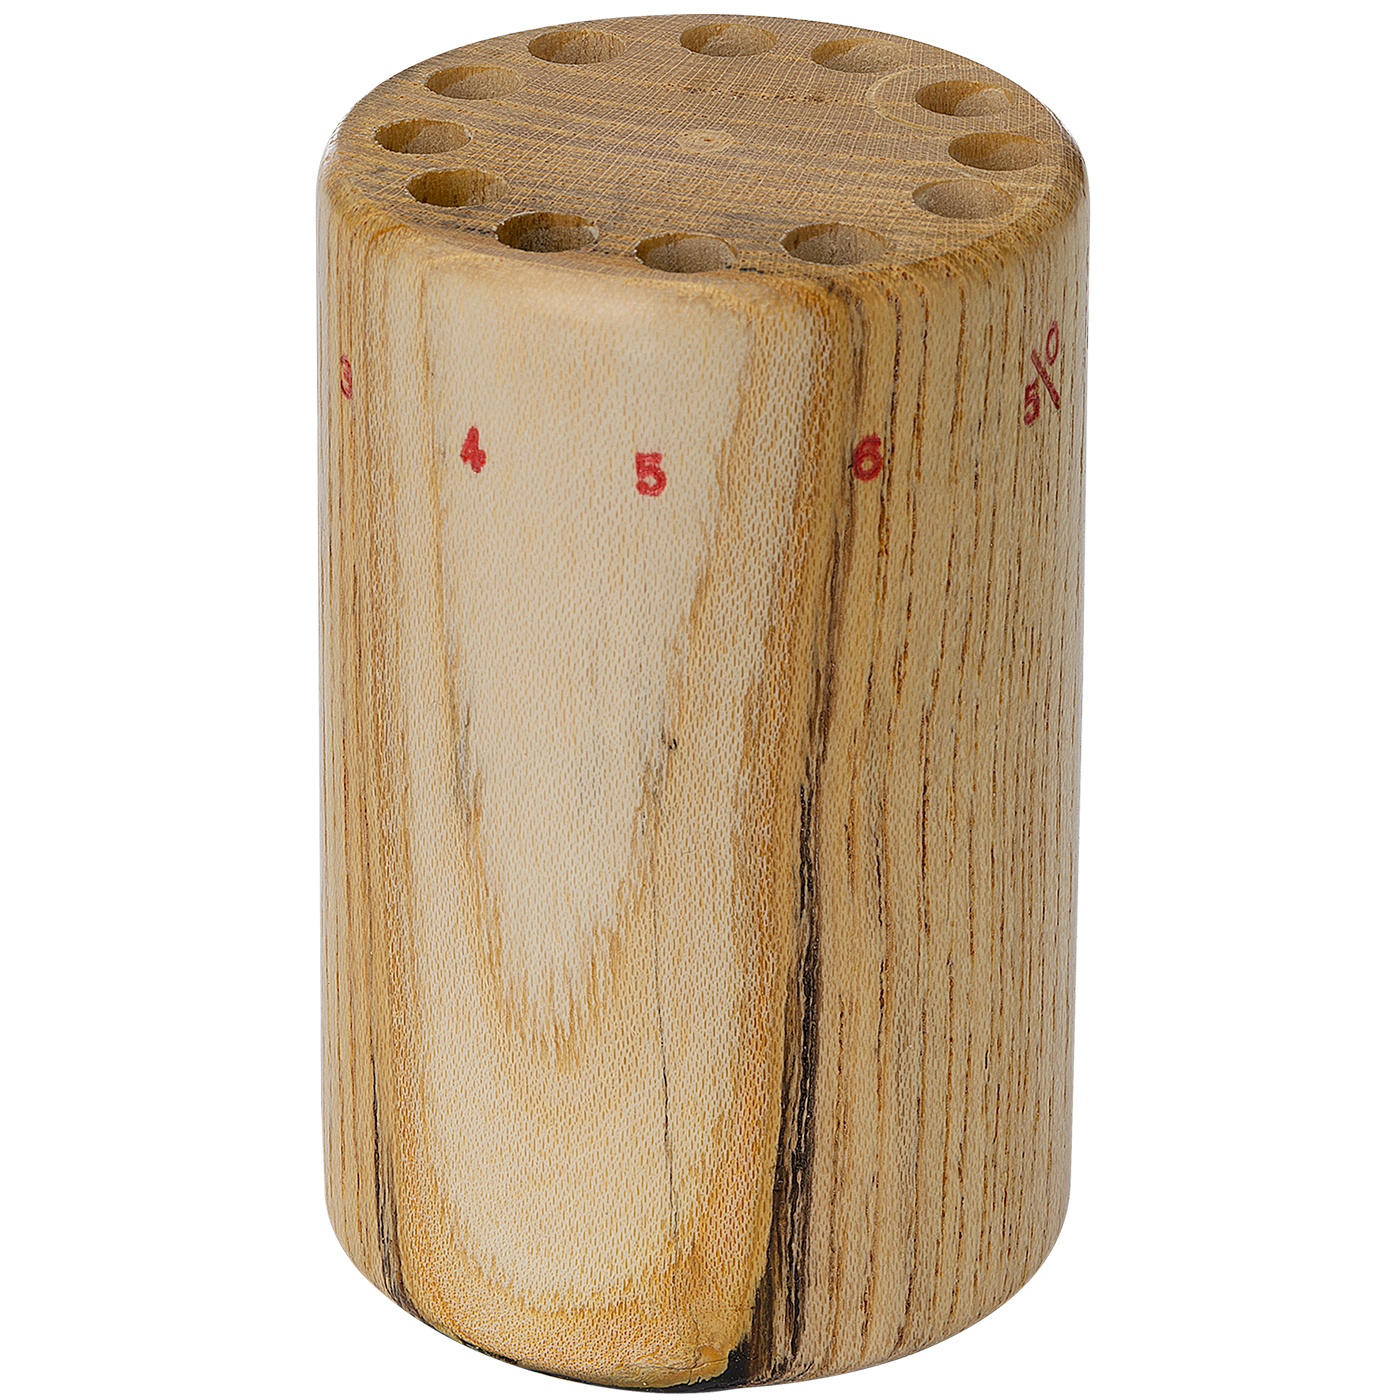 Sägeblattständer, aus Holz, Zylinderform mit Bohrungen - 1 Stück